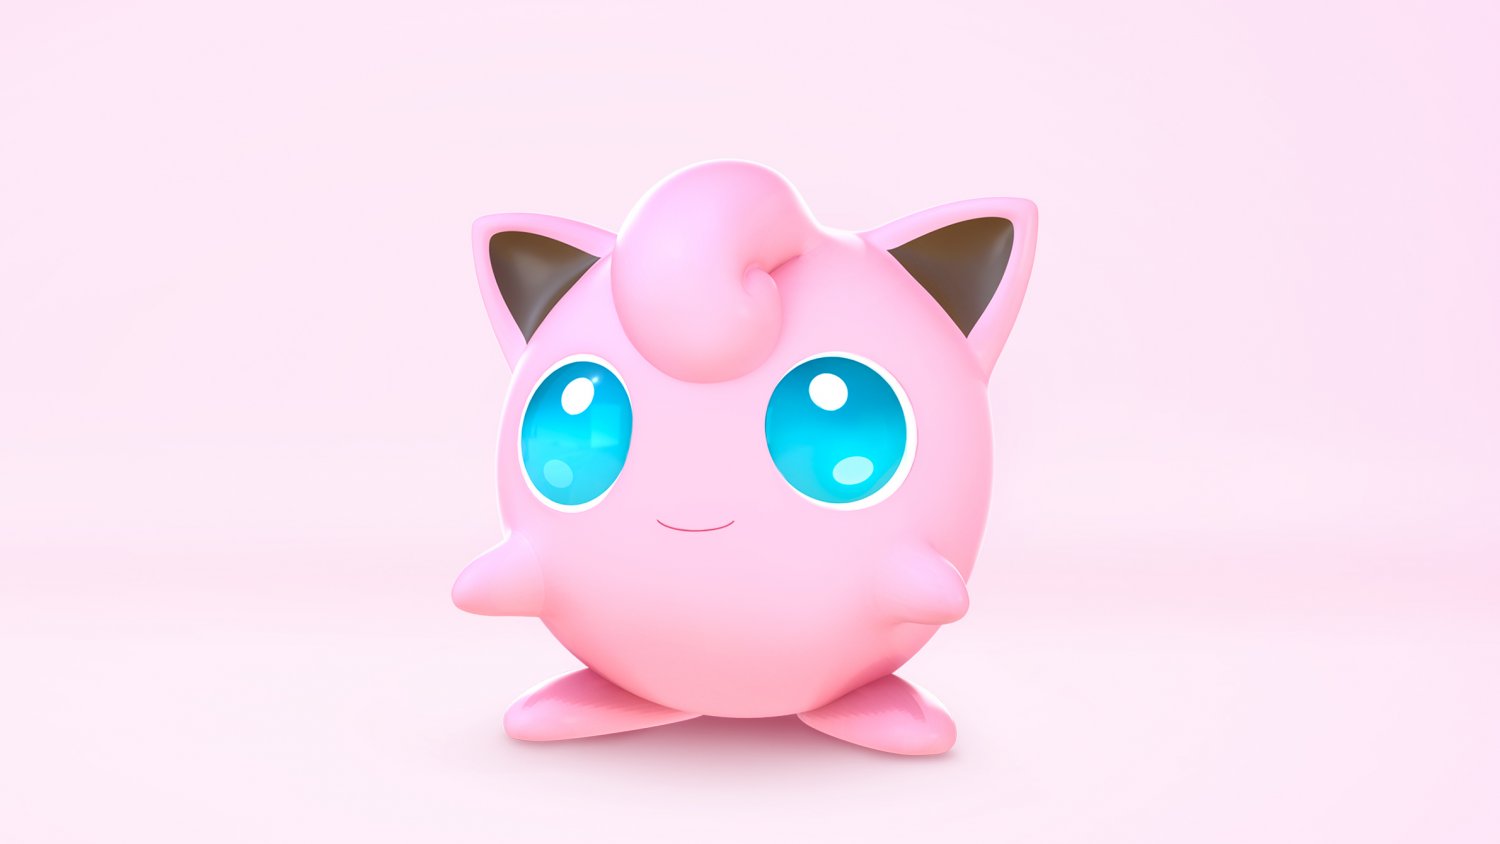 Modelo 3d de um brinquedo pokémon rosa e azul